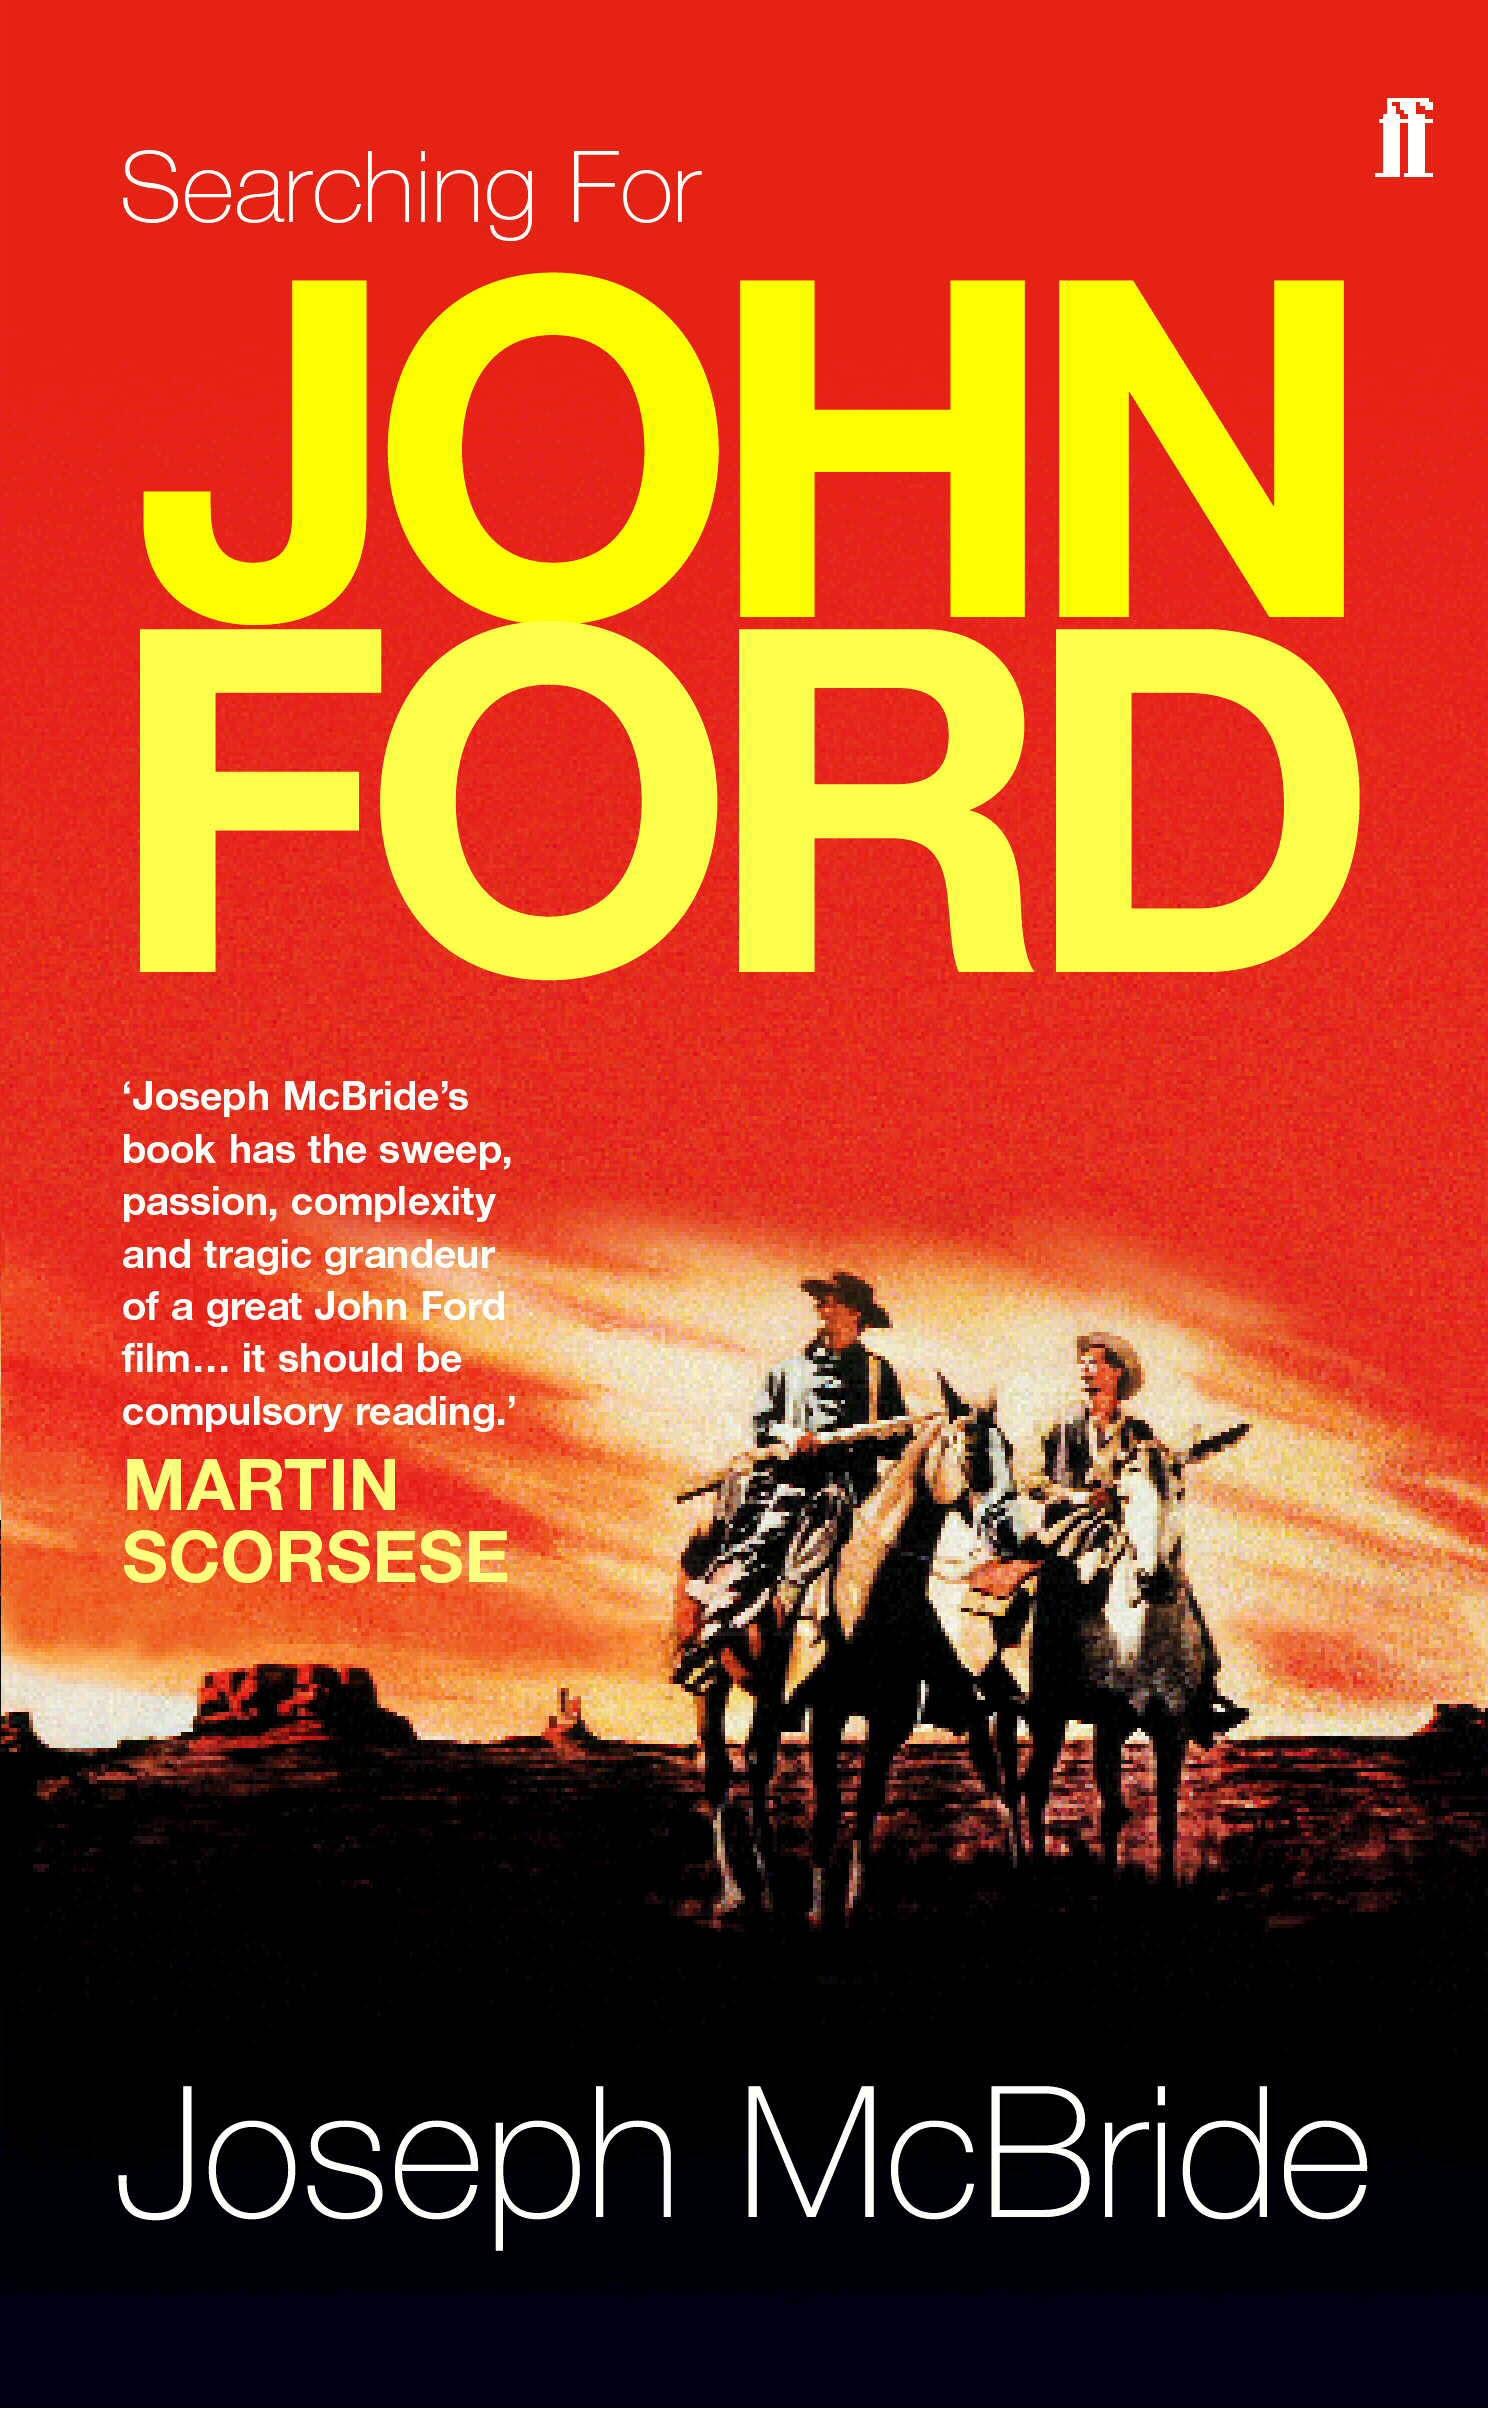 Searching for John Ford / Joseph McBride / Taschenbuch / Kartoniert / Broschiert / Englisch / 2004 / Faber & Faber / EAN 9780571225002 - McBride, Joseph